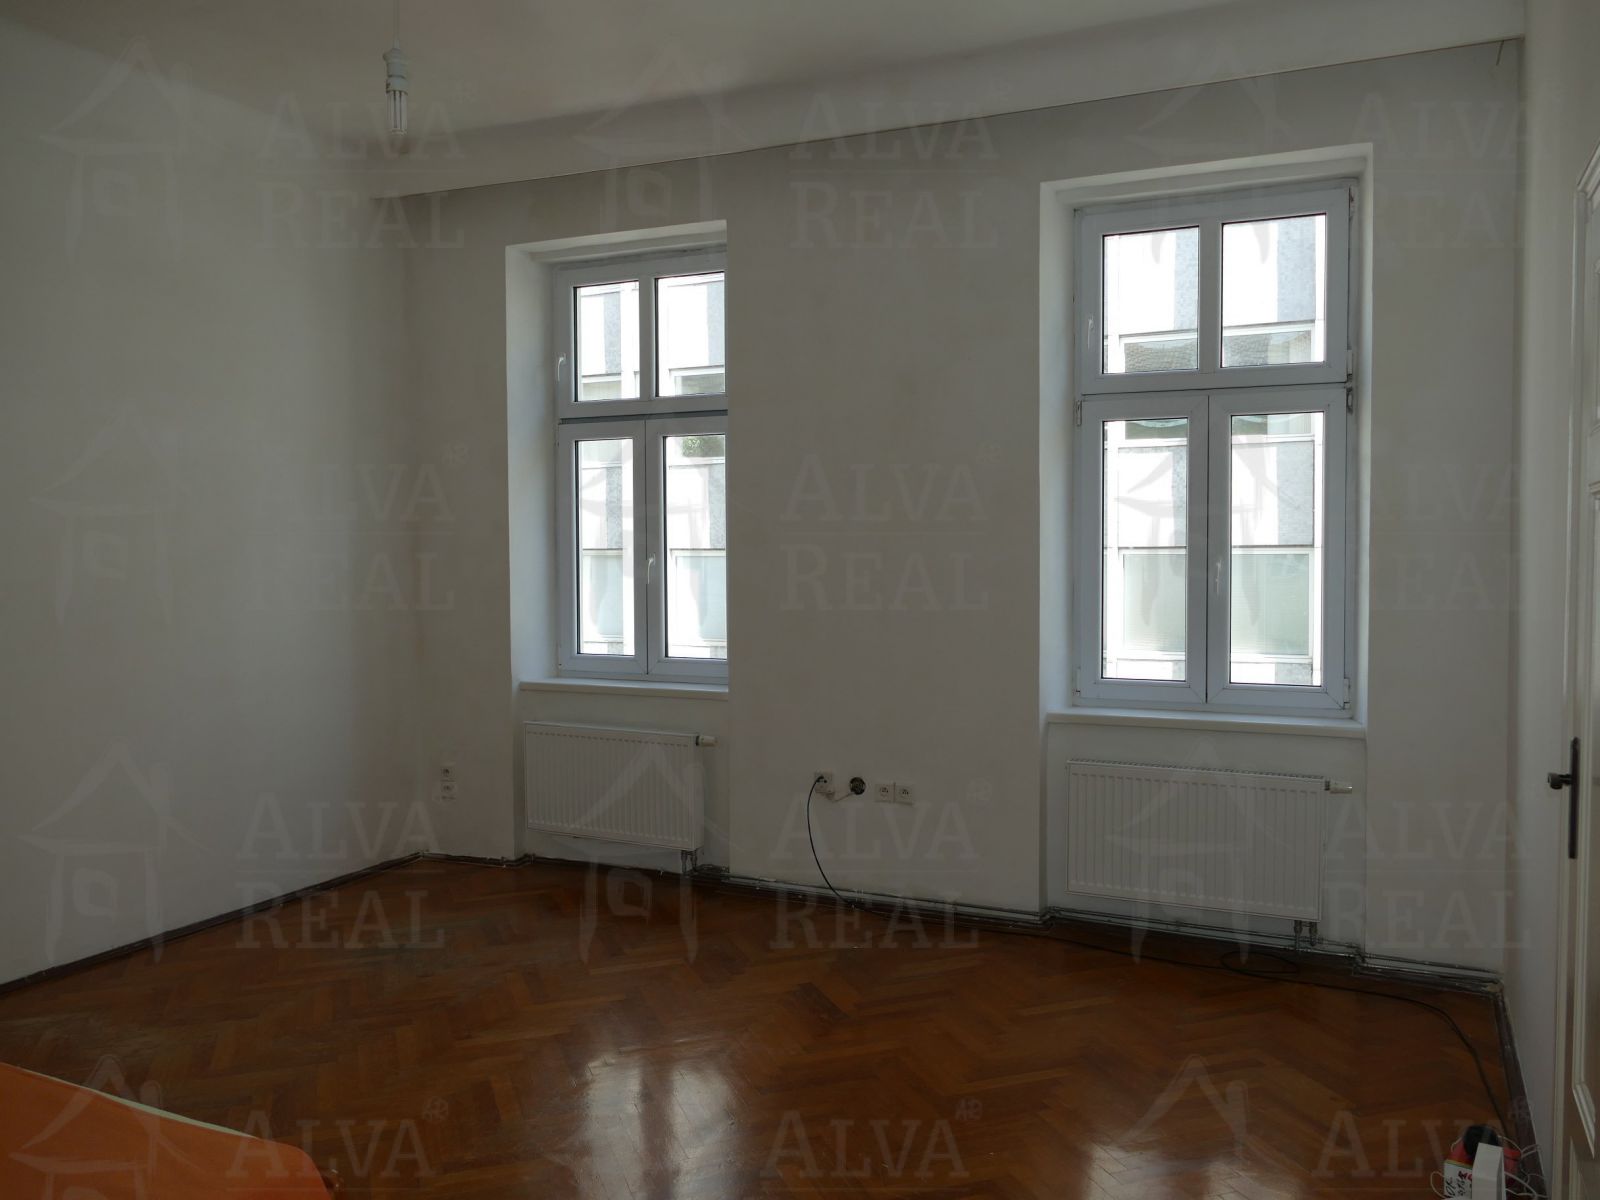 Dlouhodobý pronájem bytu 2+1 v Brně na ul. Anenská, CP 55,5 m2, možnost užívání zahrádky ve vnitrobl, obrázek č. 3